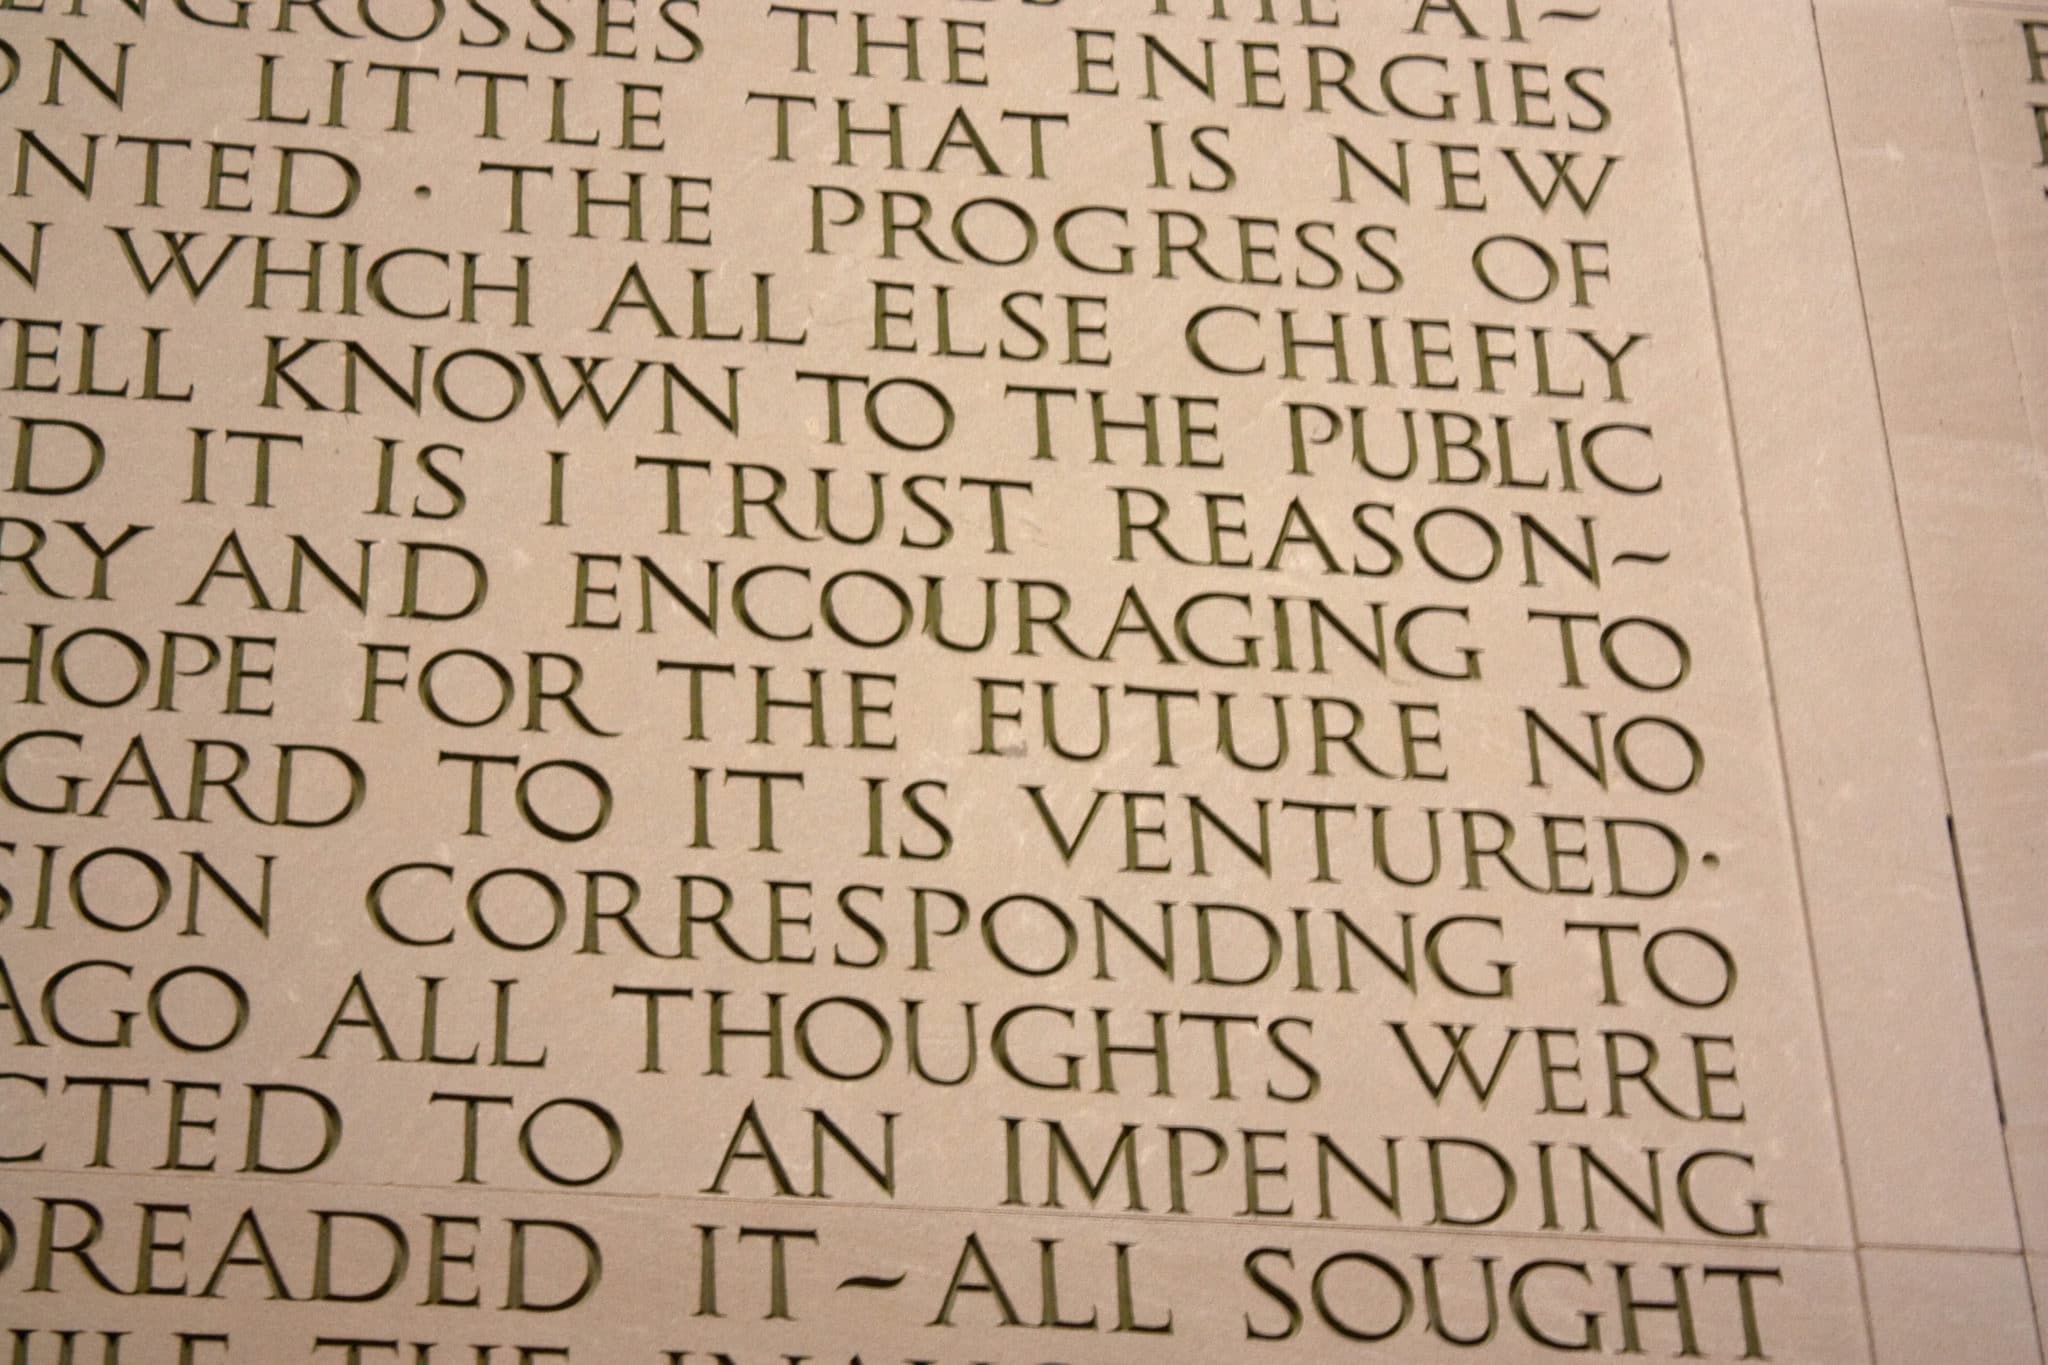 Lincoln Memorial Misspells "Future" as "Euture"